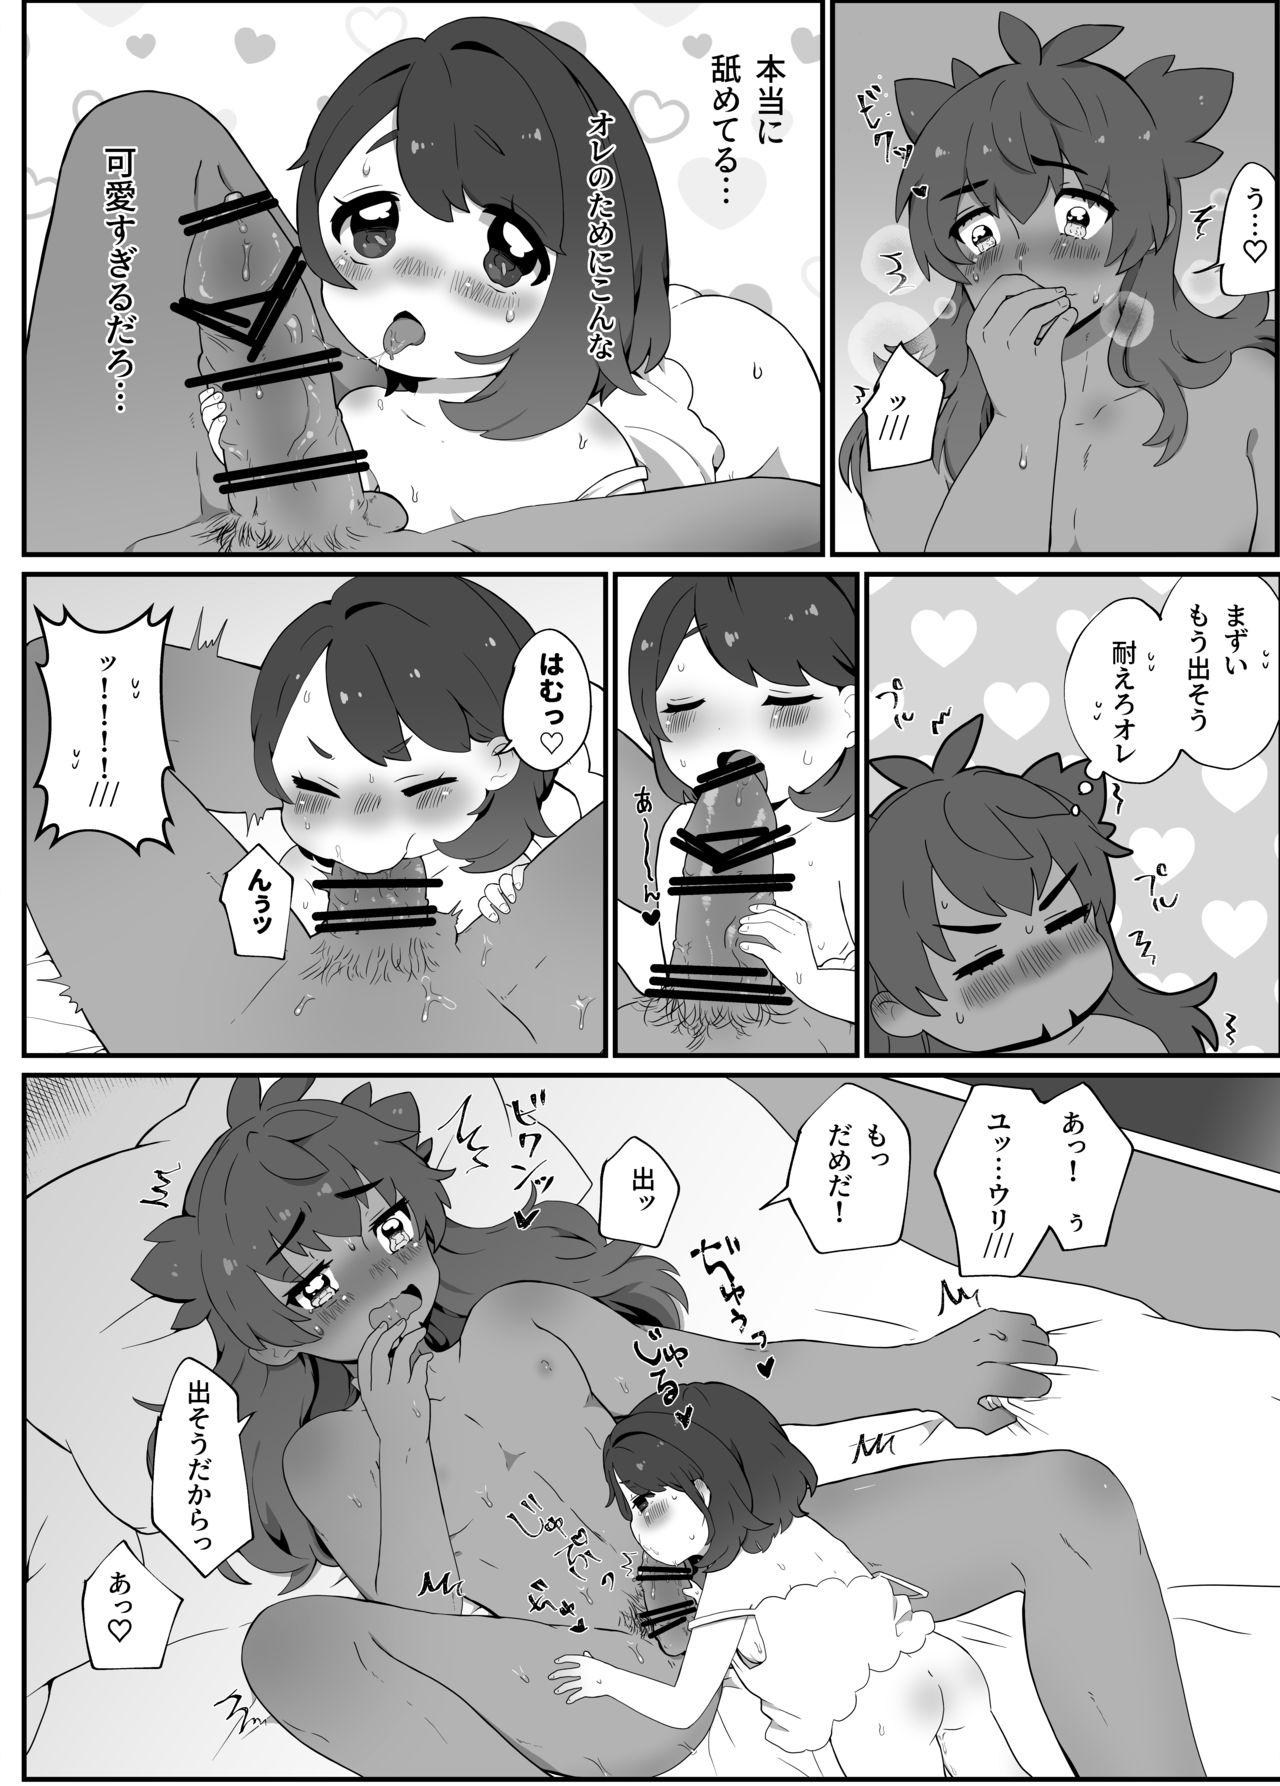 Peituda Daisukidakara Daijoubu! - Pokemon | pocket monsters Gay Facial - Page 7